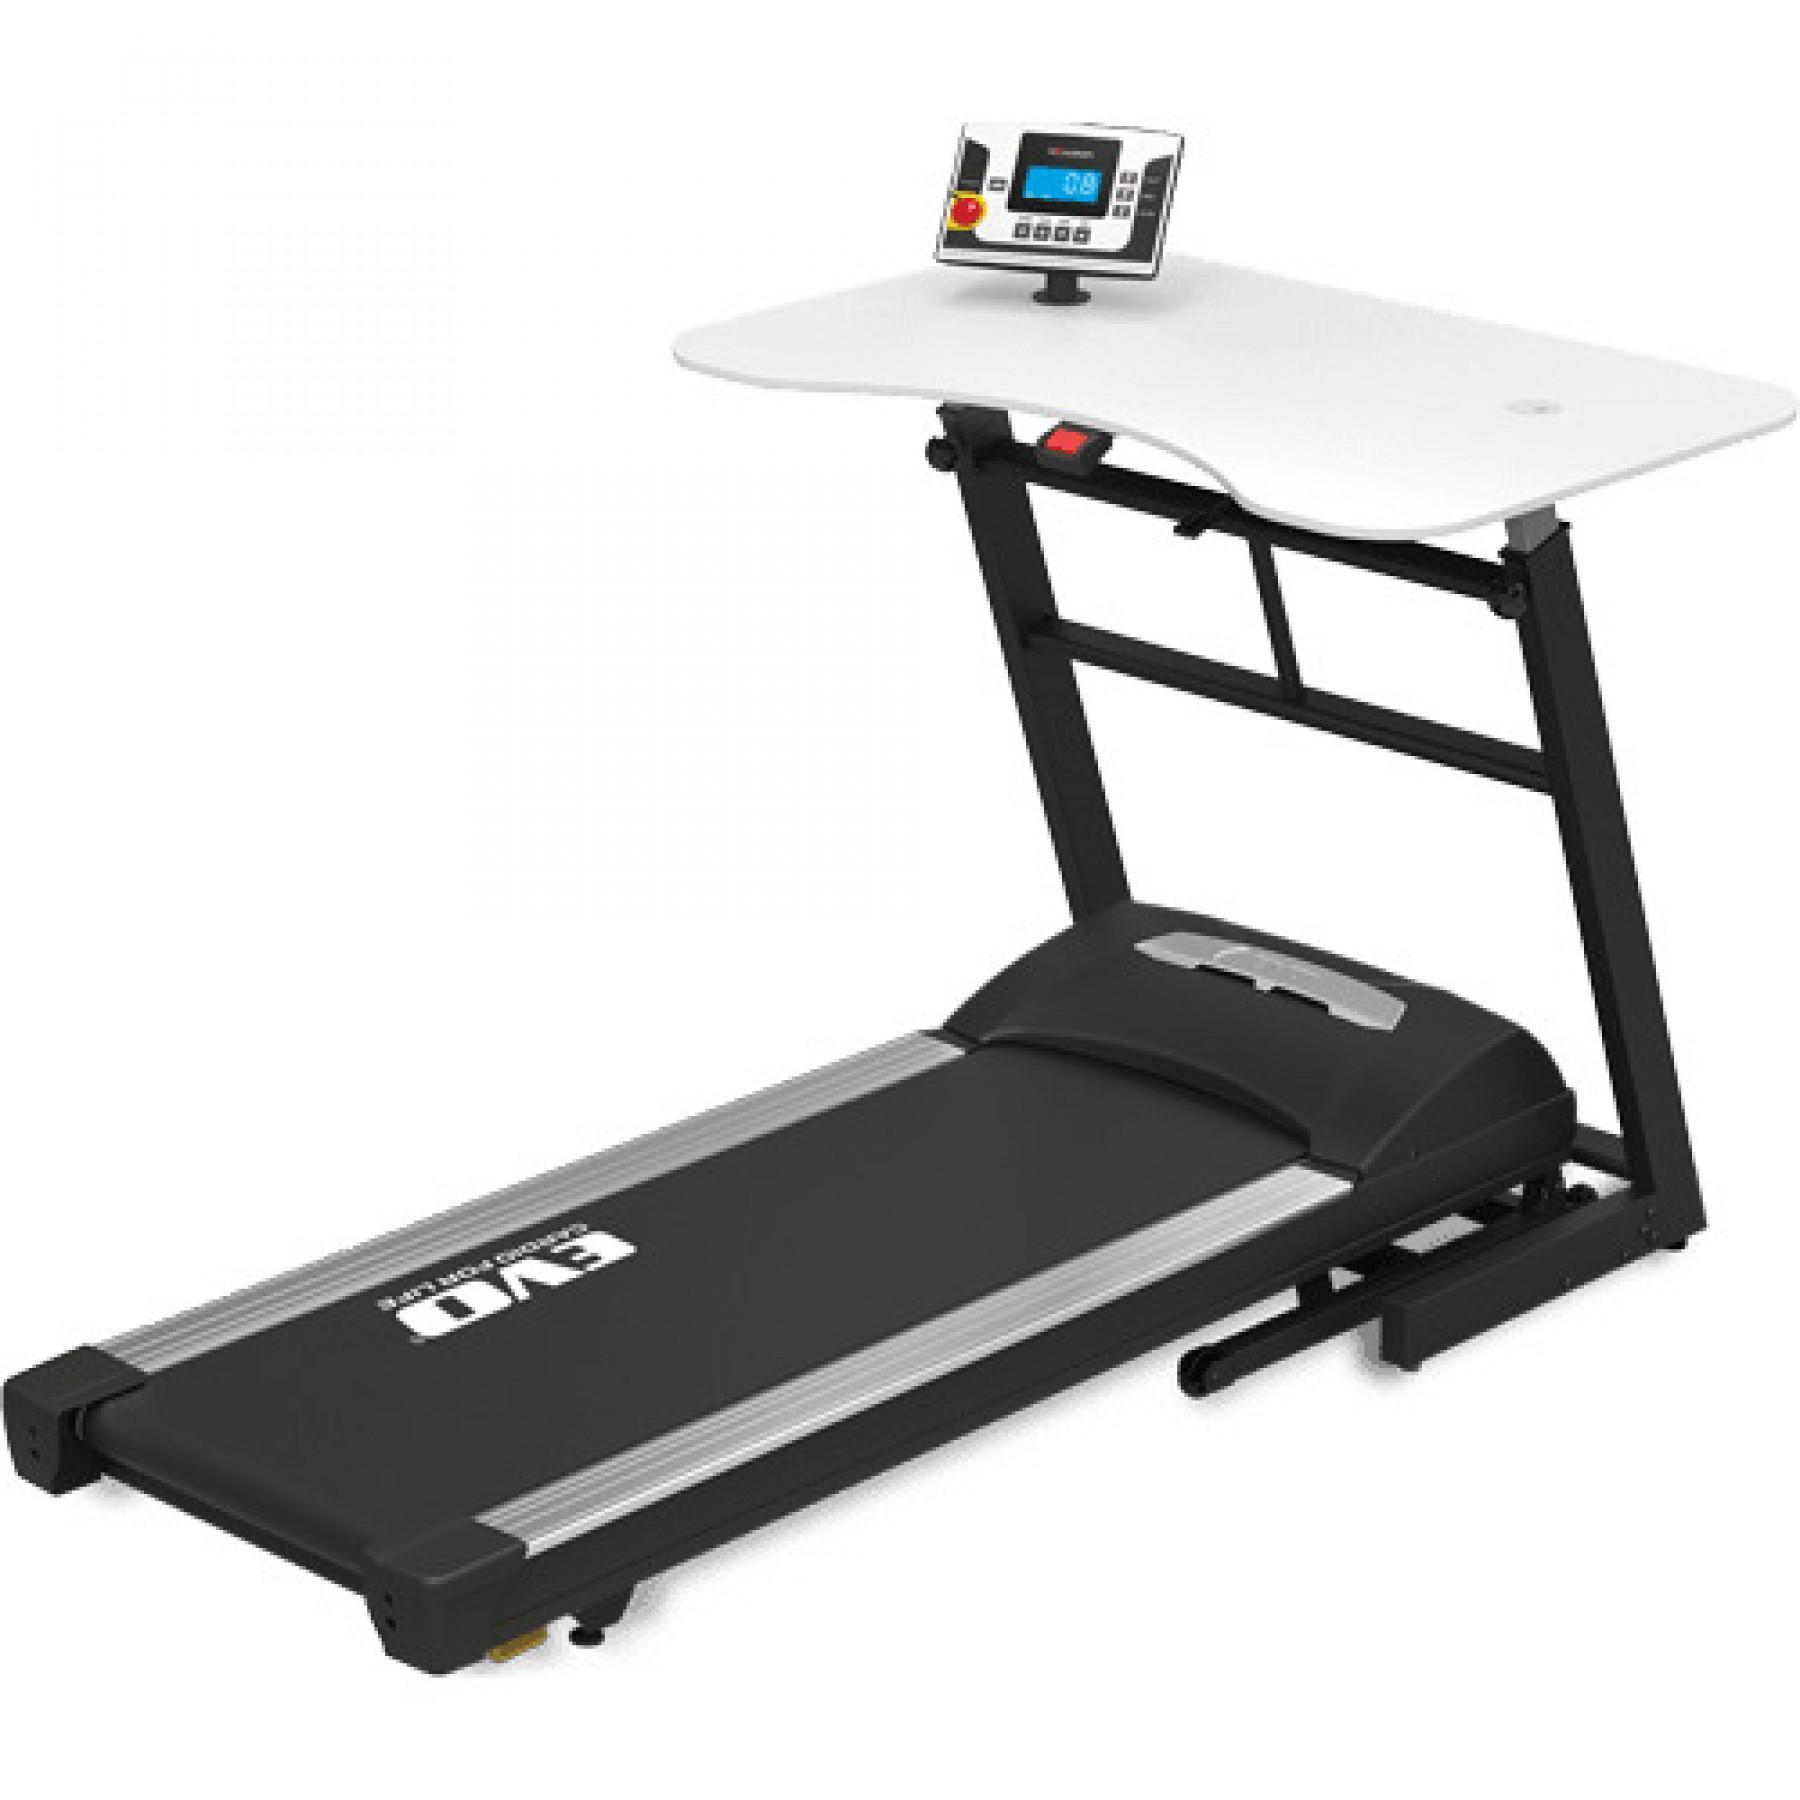 Treadmill with desk Evo Cardio 2